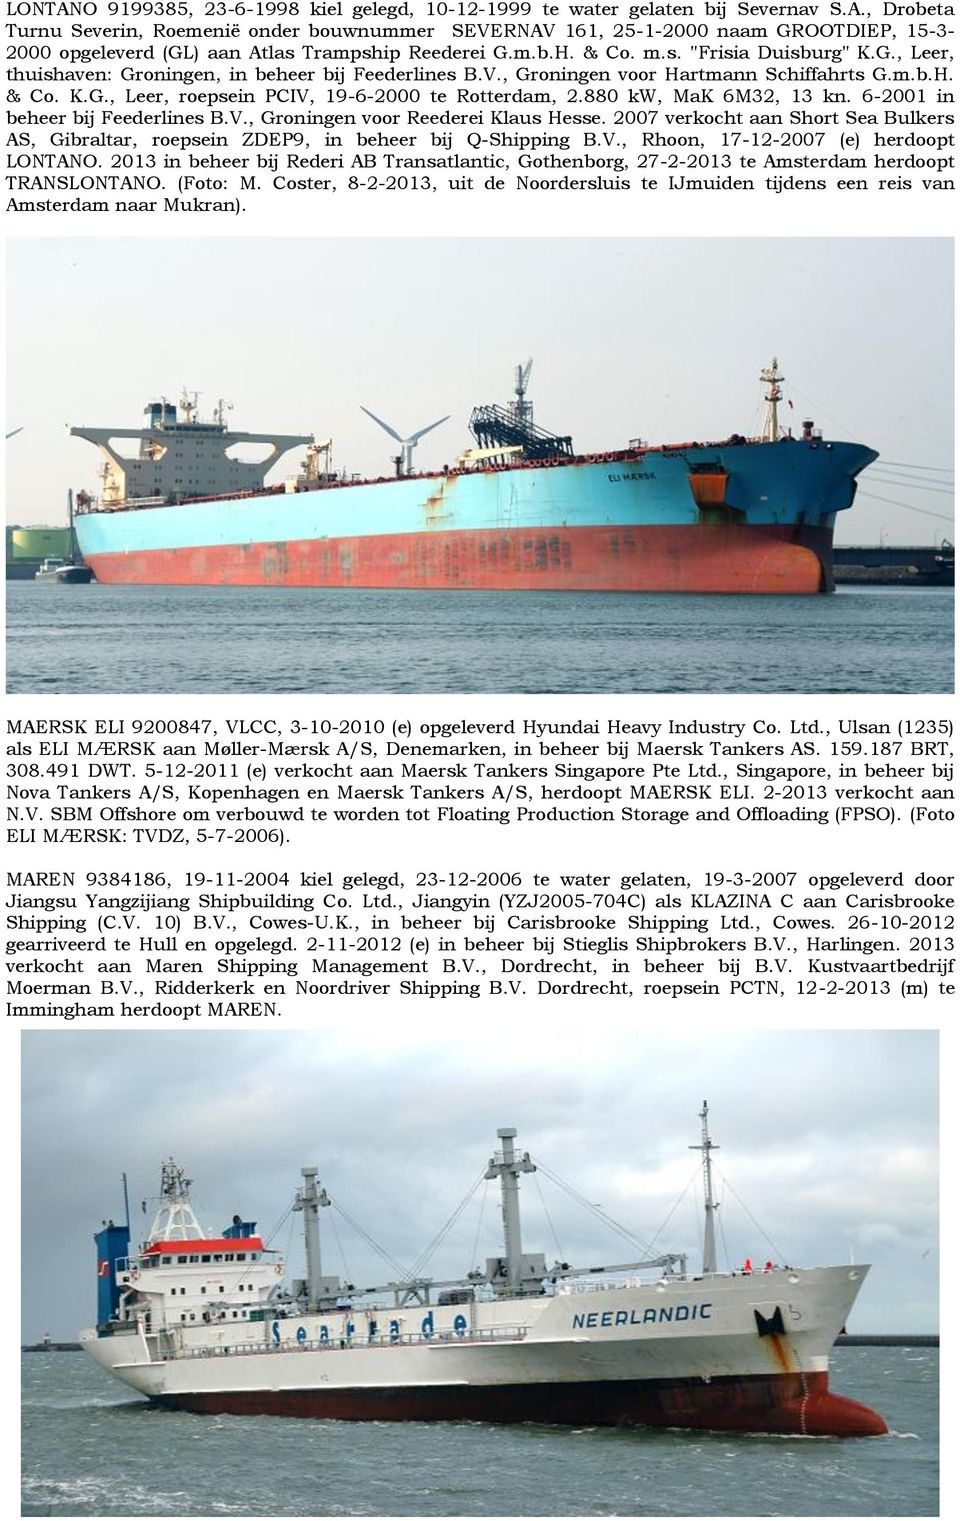 880 kw, MaK 6M32, 13 kn. 6-2001 in beheer bij Feederlines B.V., Groningen voor Reederei Klaus Hesse. 2007 verkocht aan Short Sea Bulkers AS, Gibraltar, roepsein ZDEP9, in beheer bij Q-Shipping B.V., Rhoon, 17-12-2007 (e) herdoopt LONTANO.